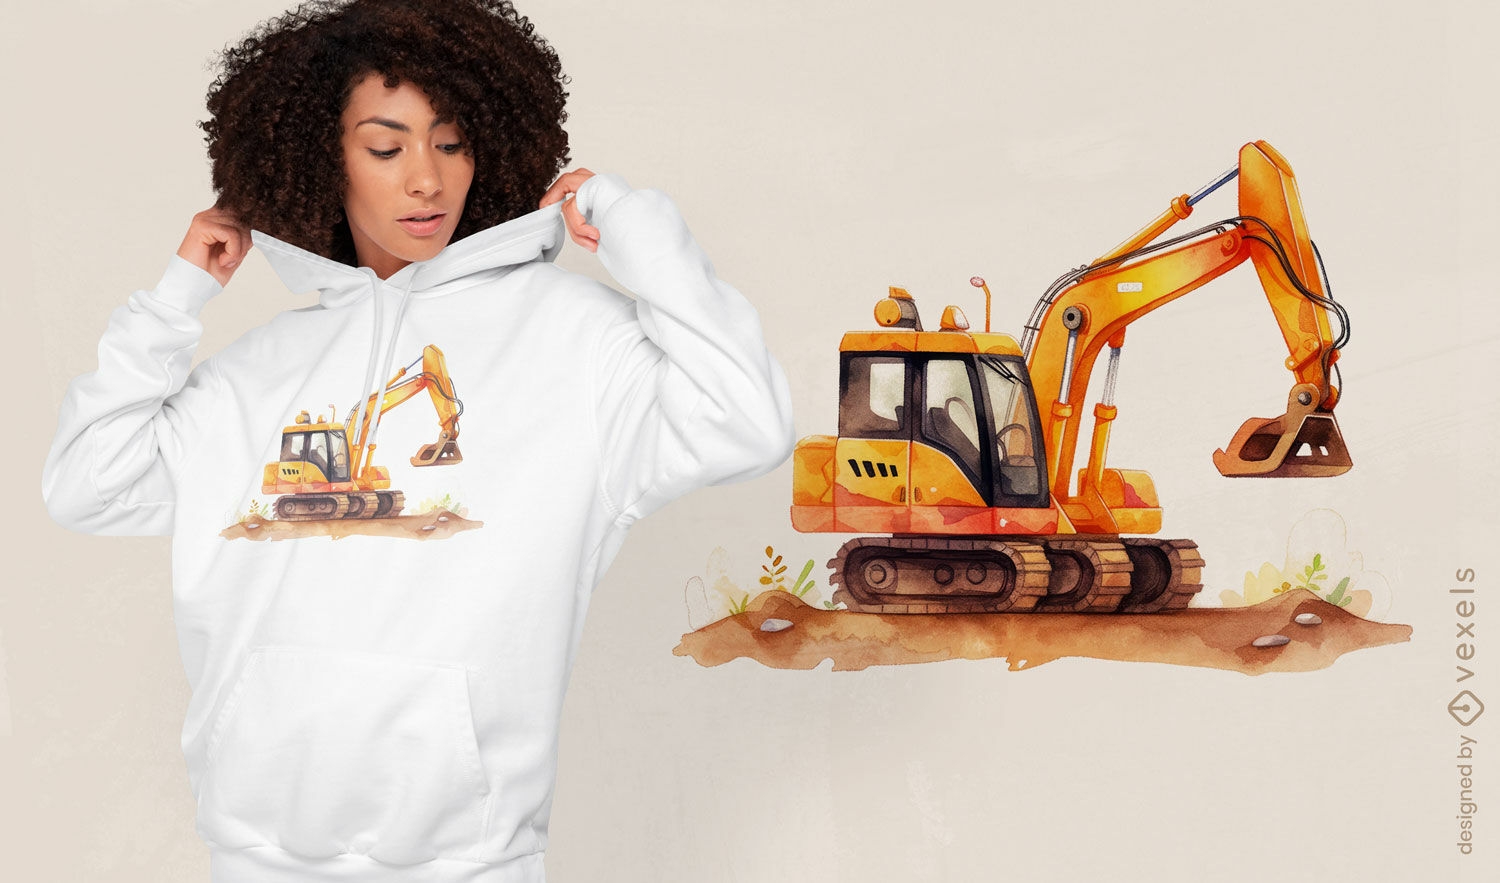 Excavator work t-shirt design